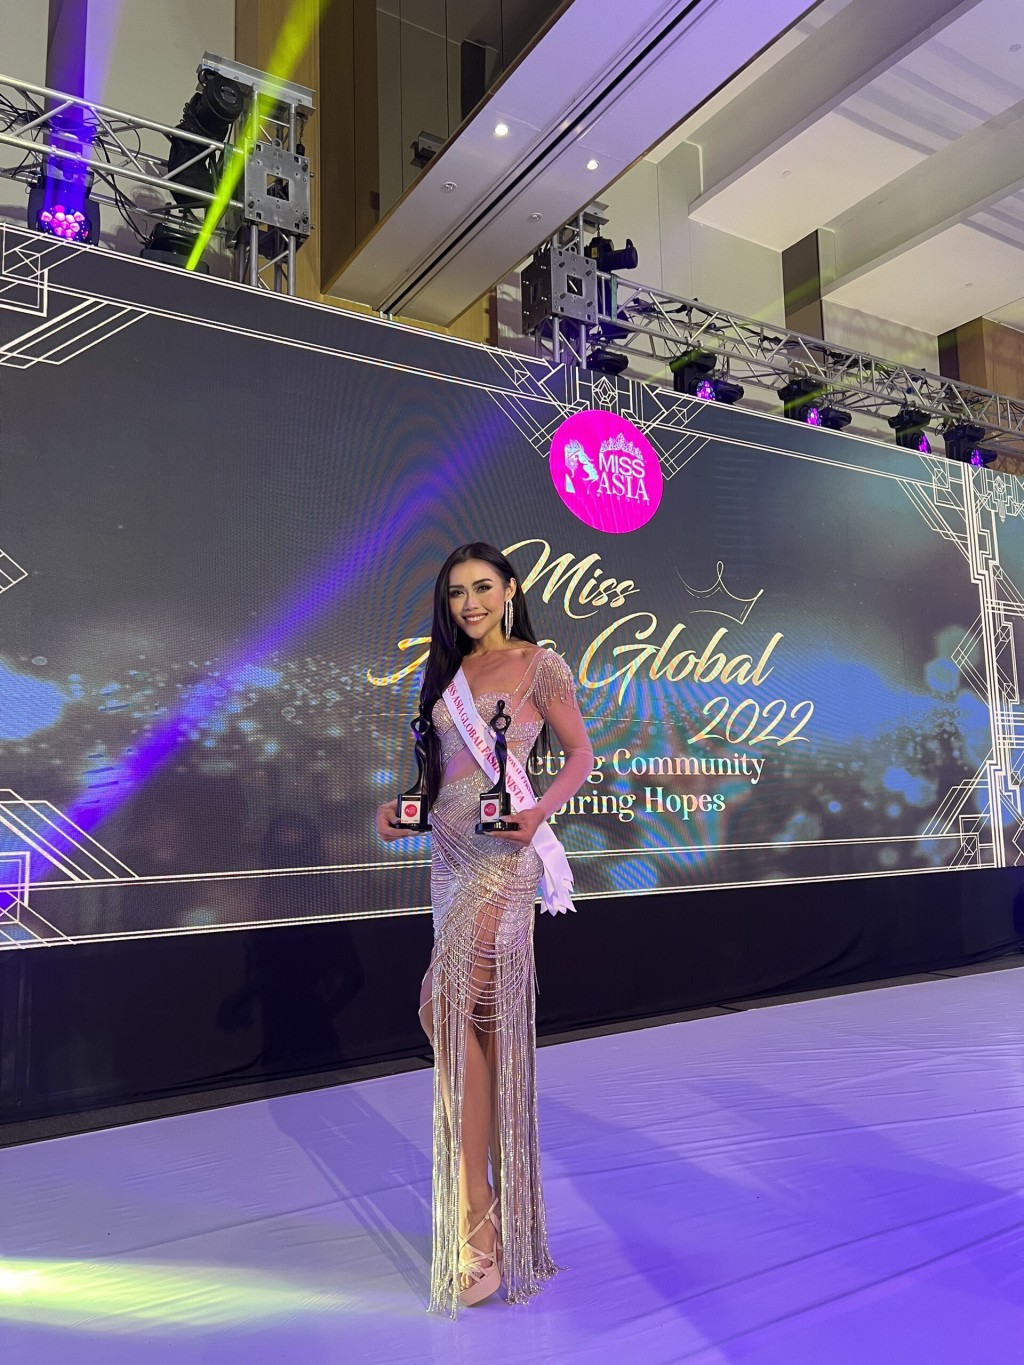 Thanh Nhi đạt danh hiệu Hoa hậu Thời trang châu Á Toàn cầu 2022